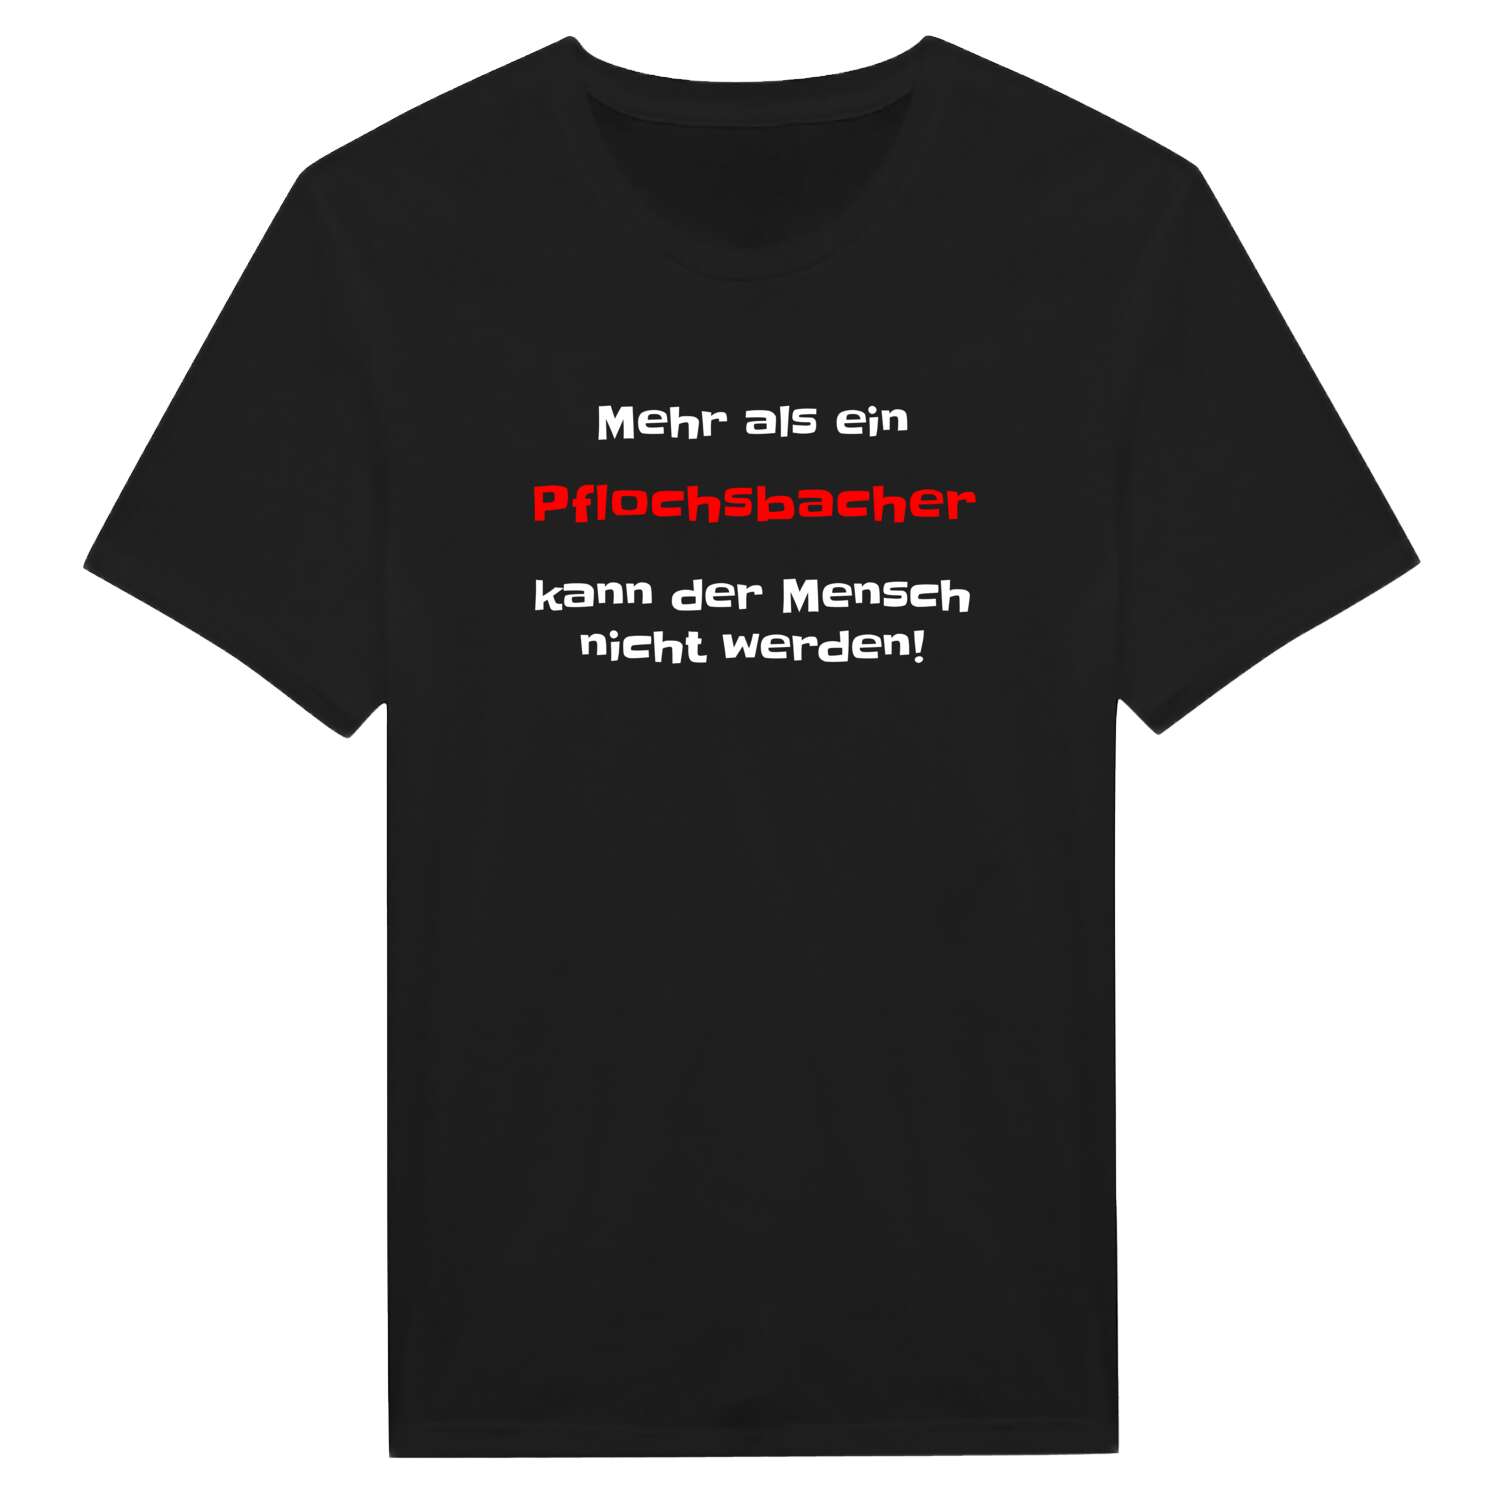 Pflochsbach T-Shirt »Mehr als ein«